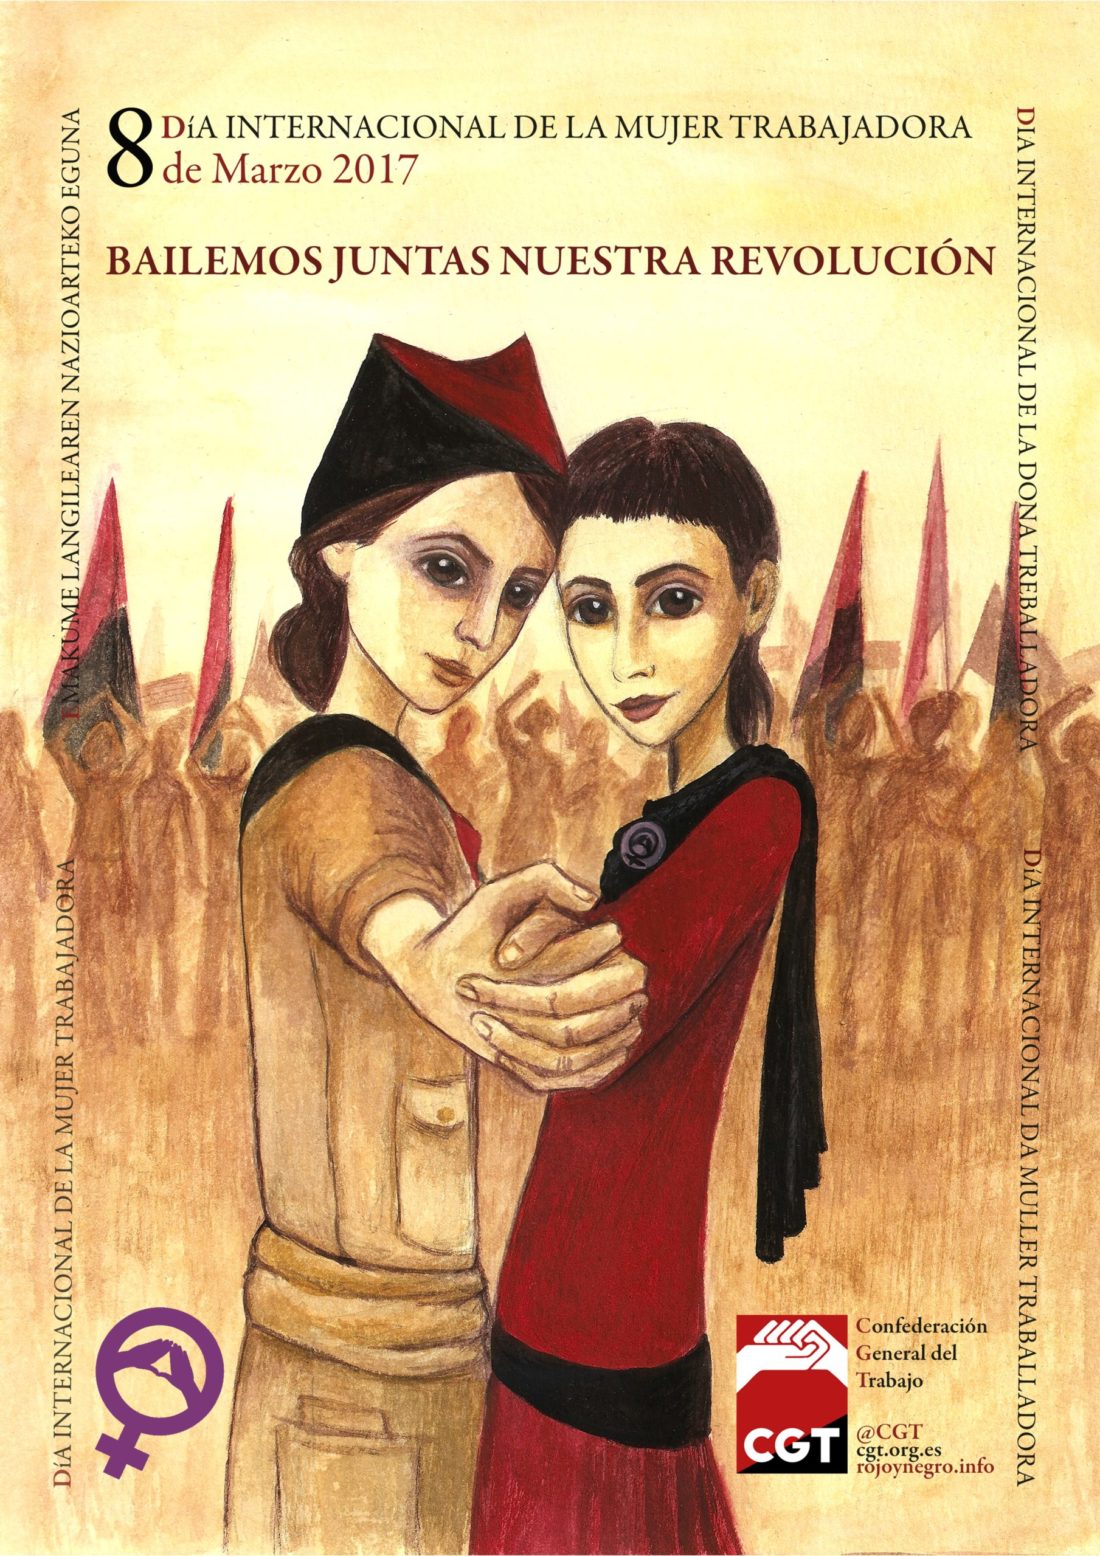 8 de Marzo, Día Internacional de la Mujer Trabajadora: Actos y convocatorias